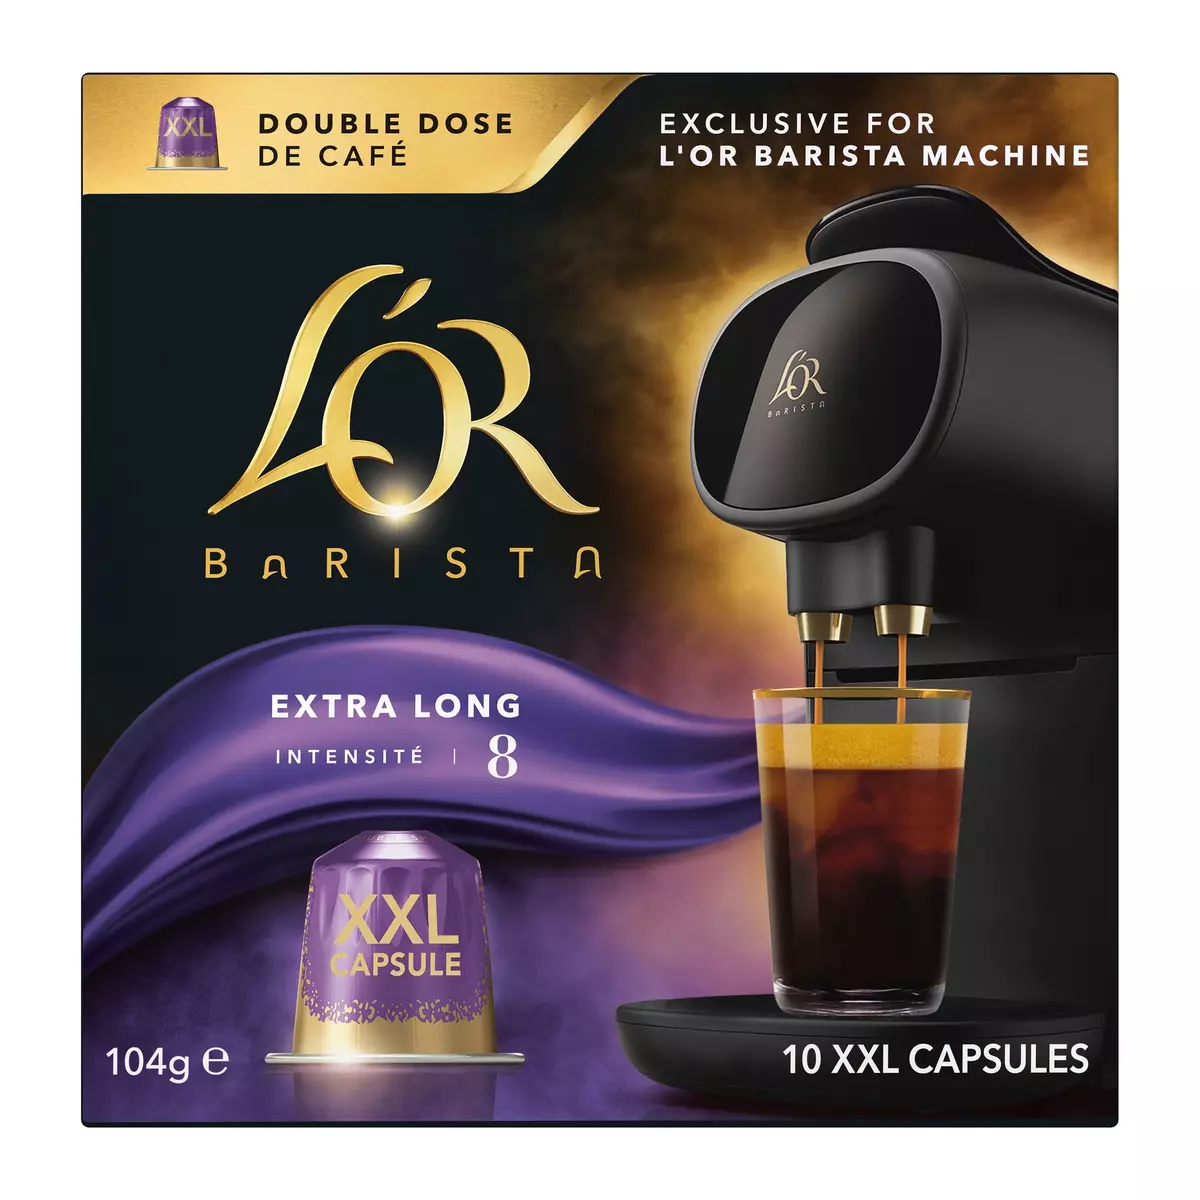 L'OR BARISTA Capsules de café extra long intensité 8 compatibles L'Or Barista 10 capsules 104g